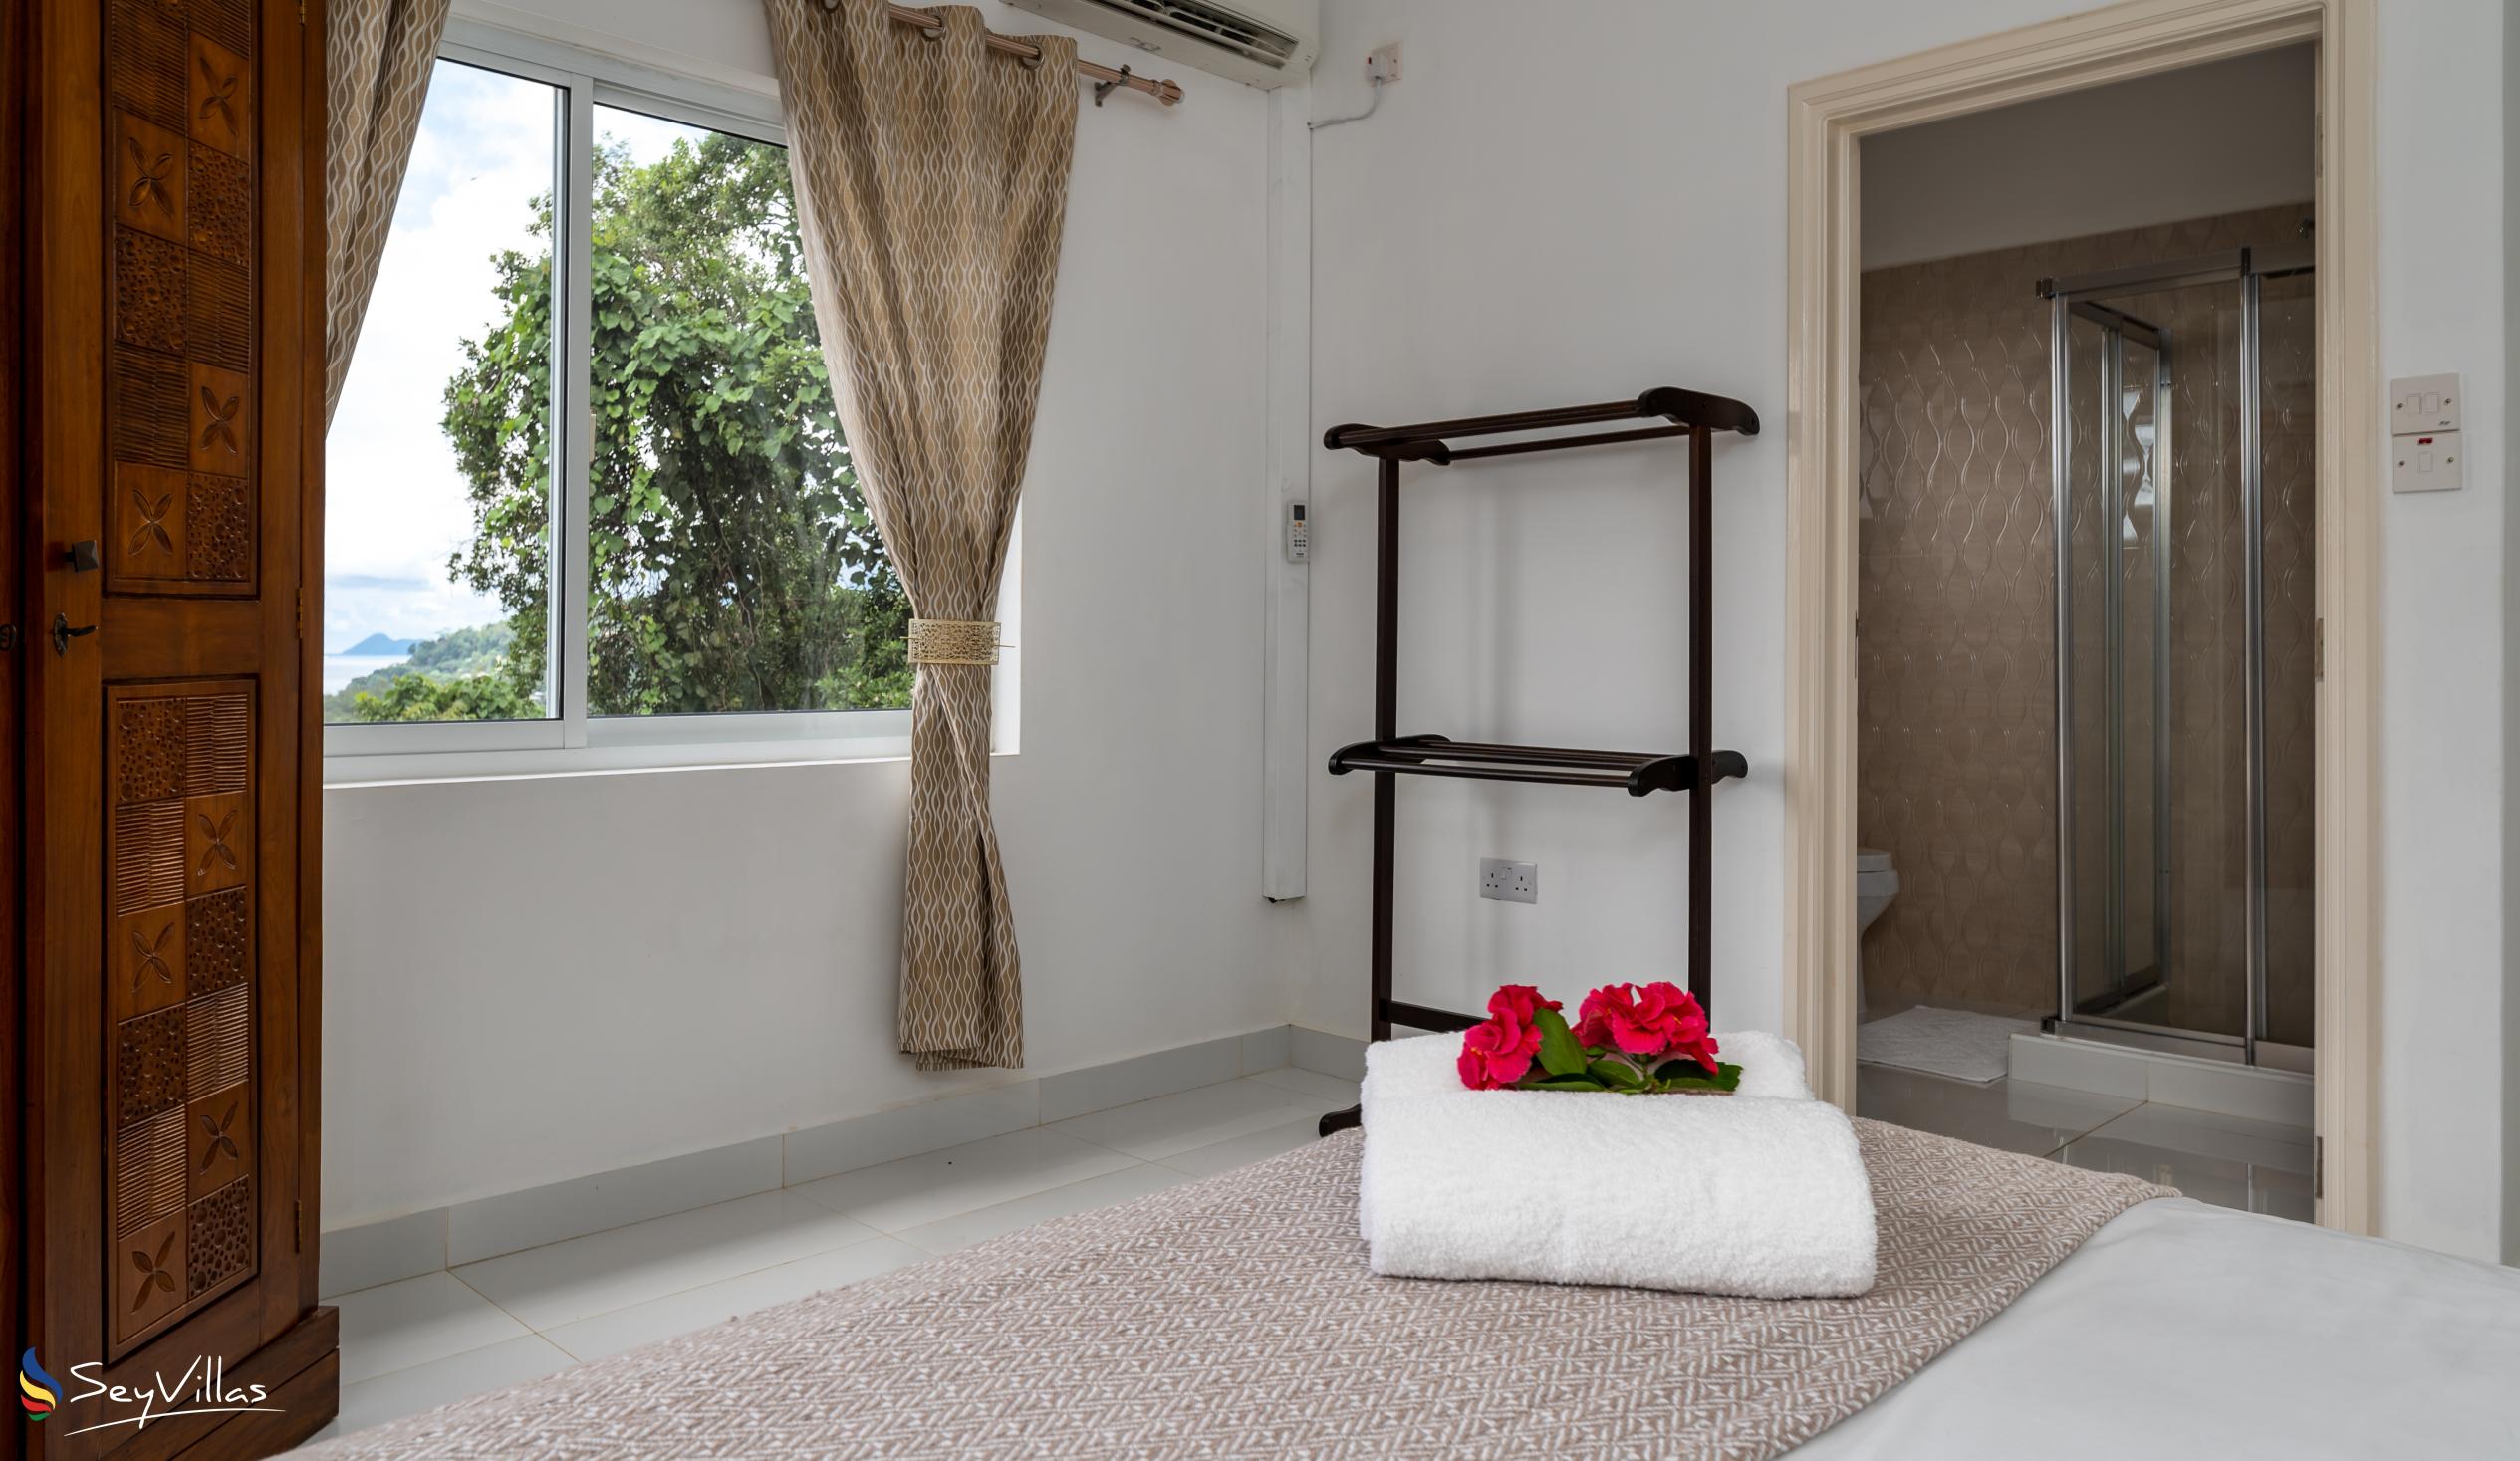 Photo 53: Cella Villa - 2-Bedroom Apartment - Mahé (Seychelles)